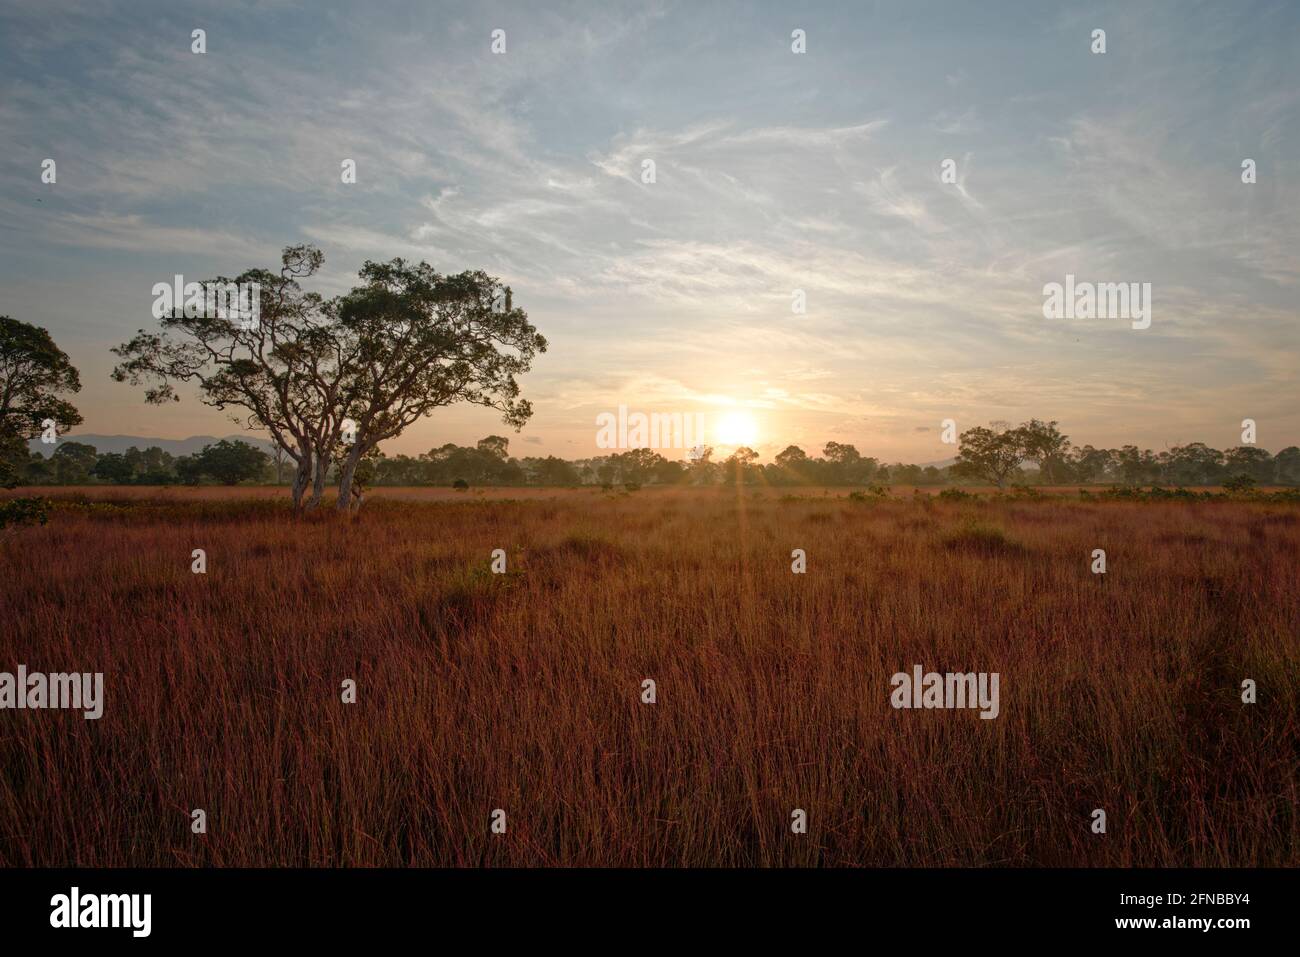 sunny color yellow grassy savanna safari landscape at sunrise wallpaper Stock Photo